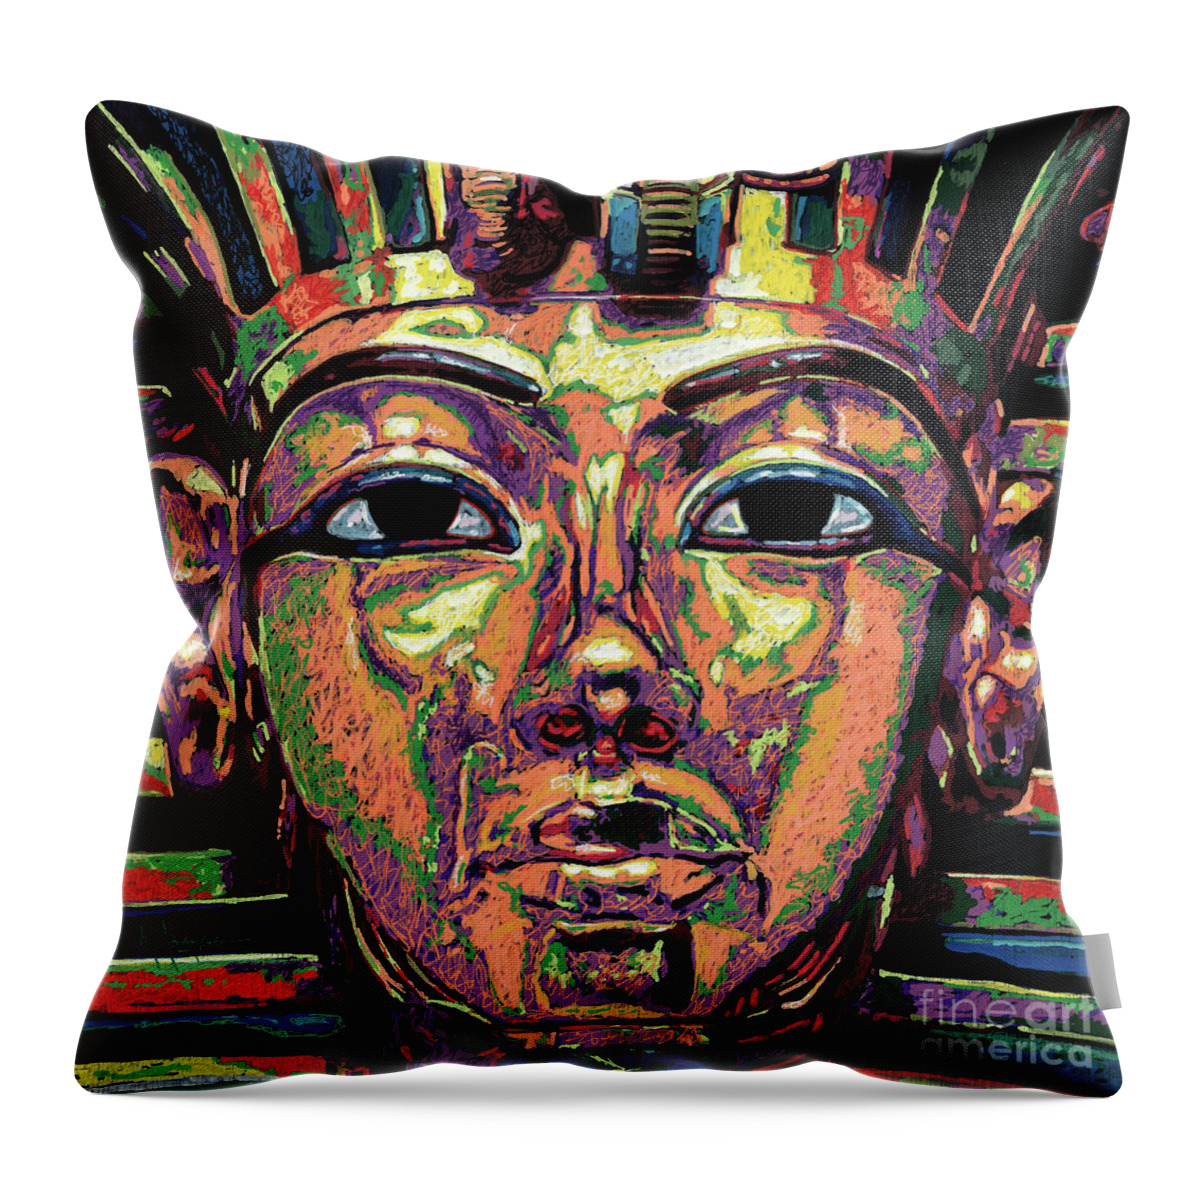 King Tutankhamun Death Mask Throw Pillow featuring the painting King Tutankhamun Death Mask by Maria Arango